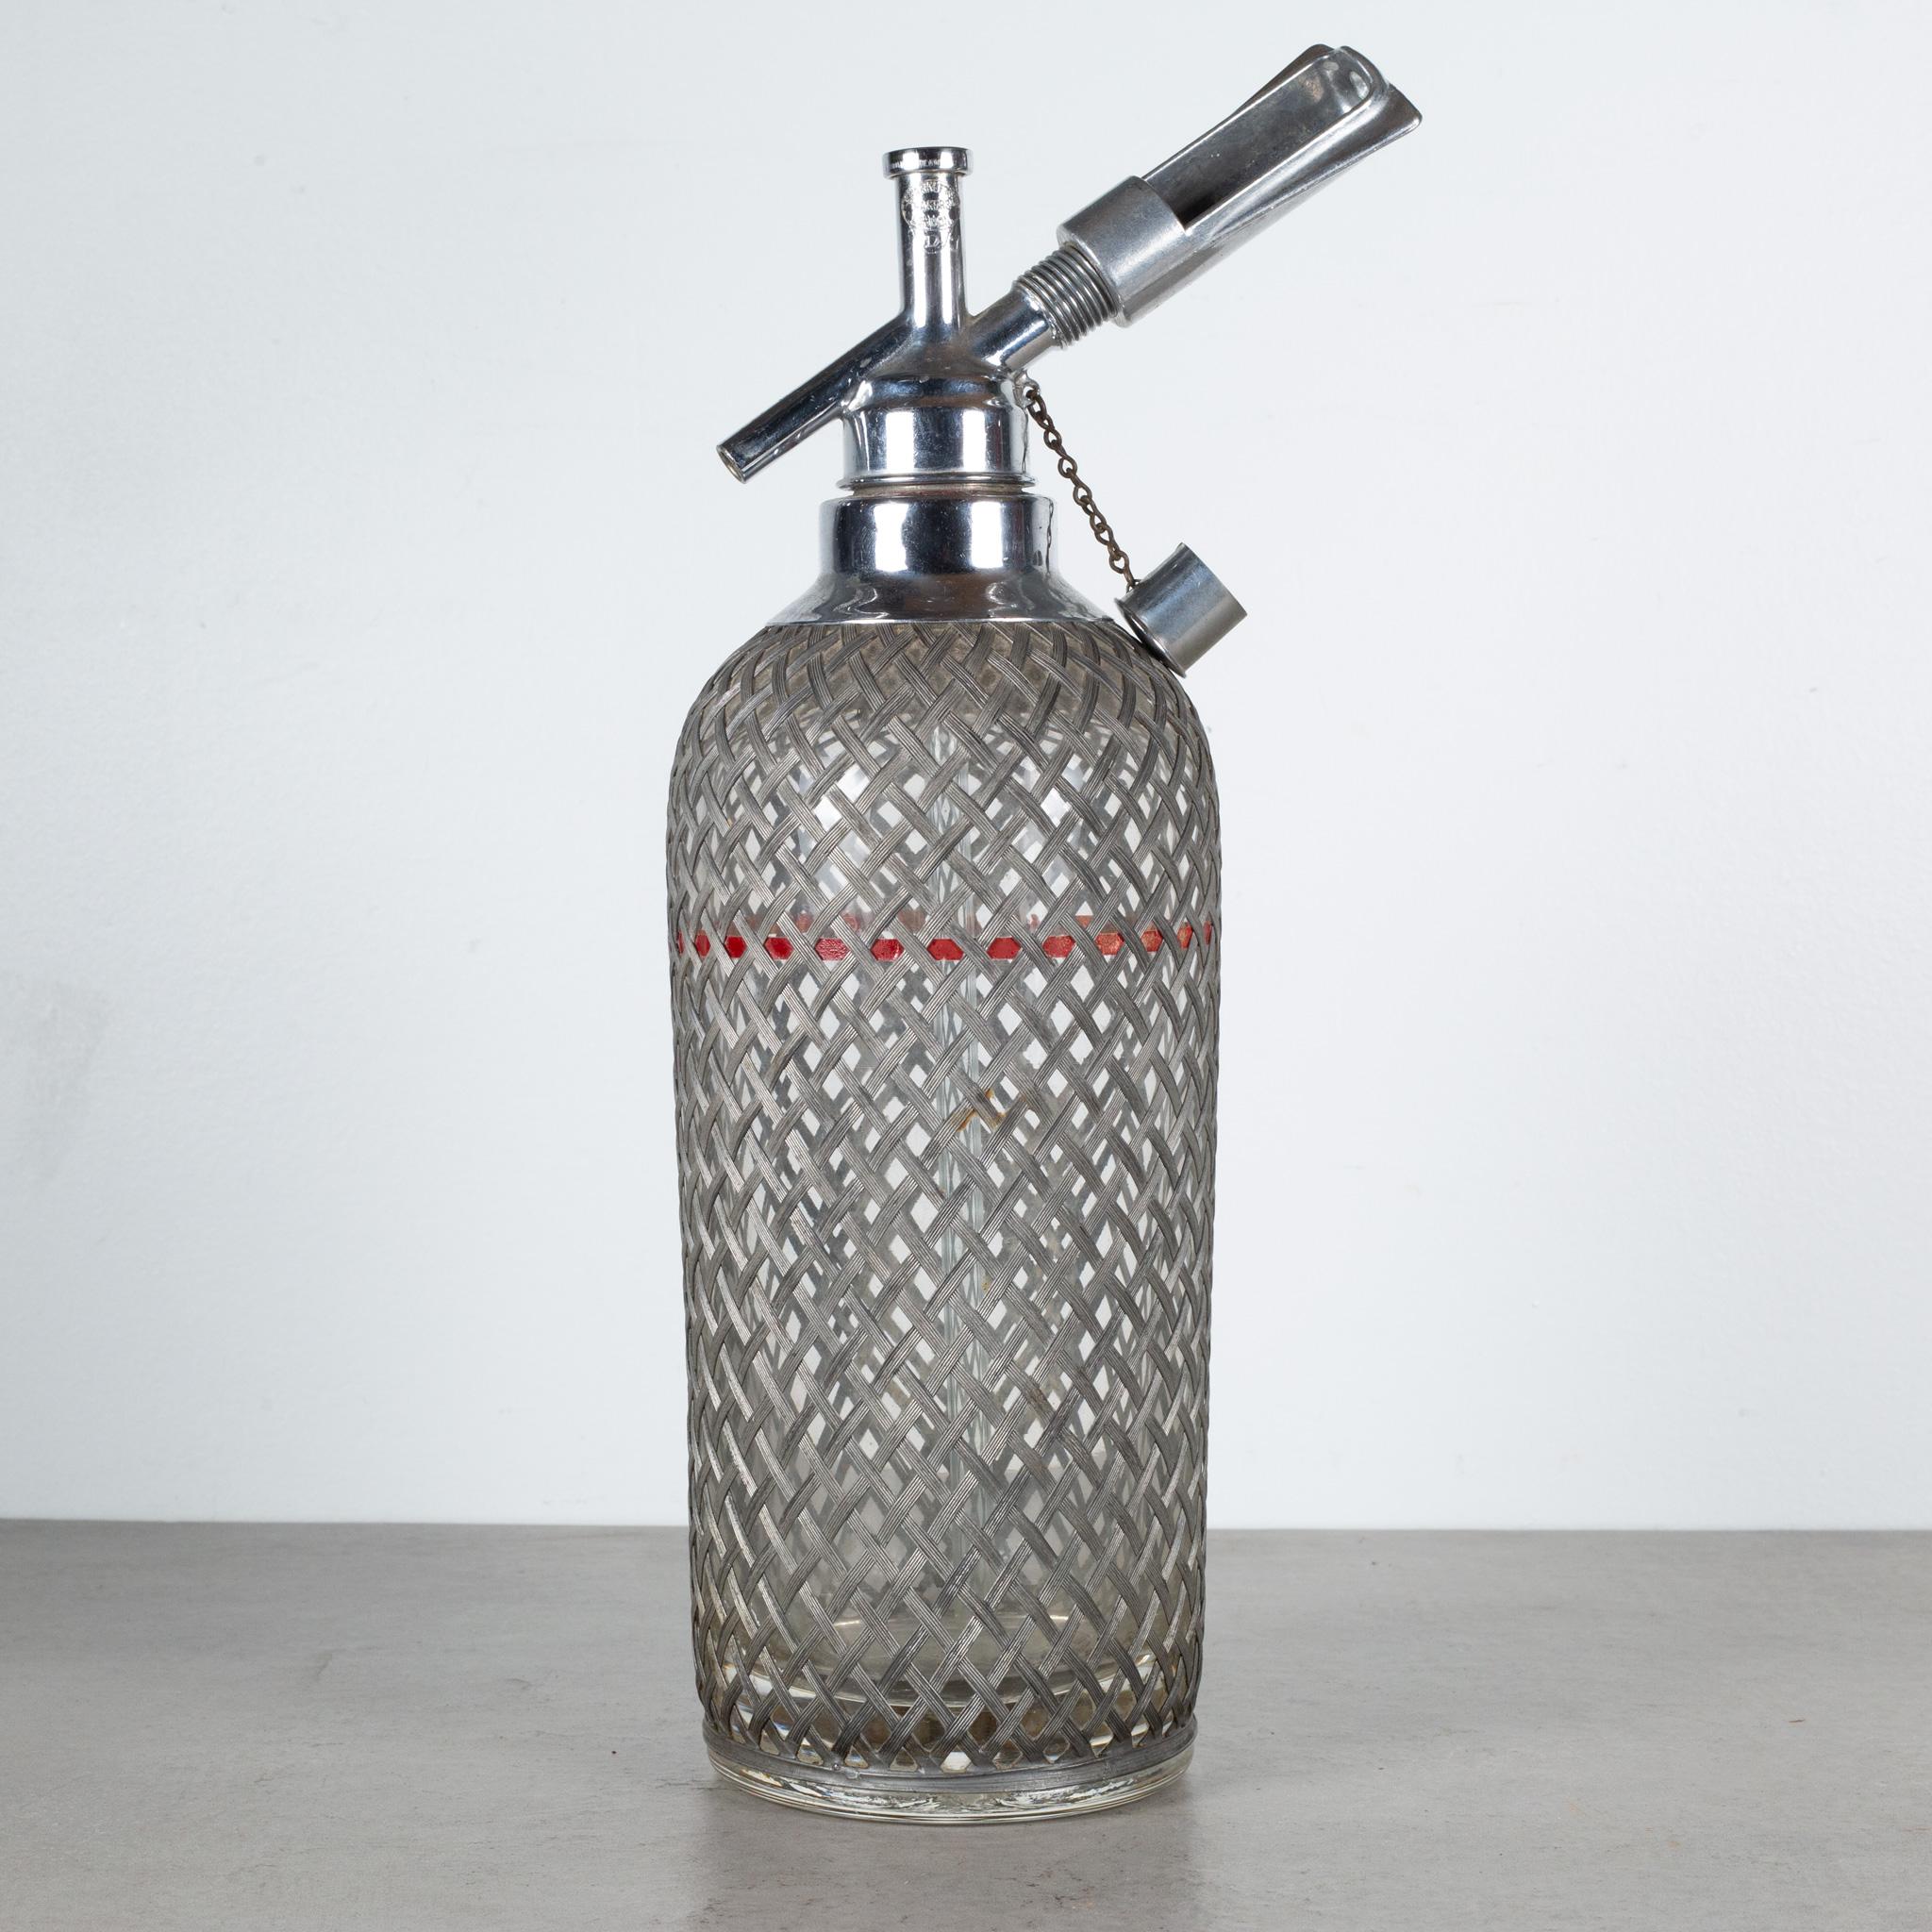 ÜBER

Eine originelle Art Deco Sparklets Seltzer-Flasche. Die dicke Glasflasche hat eine Drahtgeflechtabdeckung, Chrommechanismen auf der Oberseite, eine rote Fülllinie und die Ätzung 